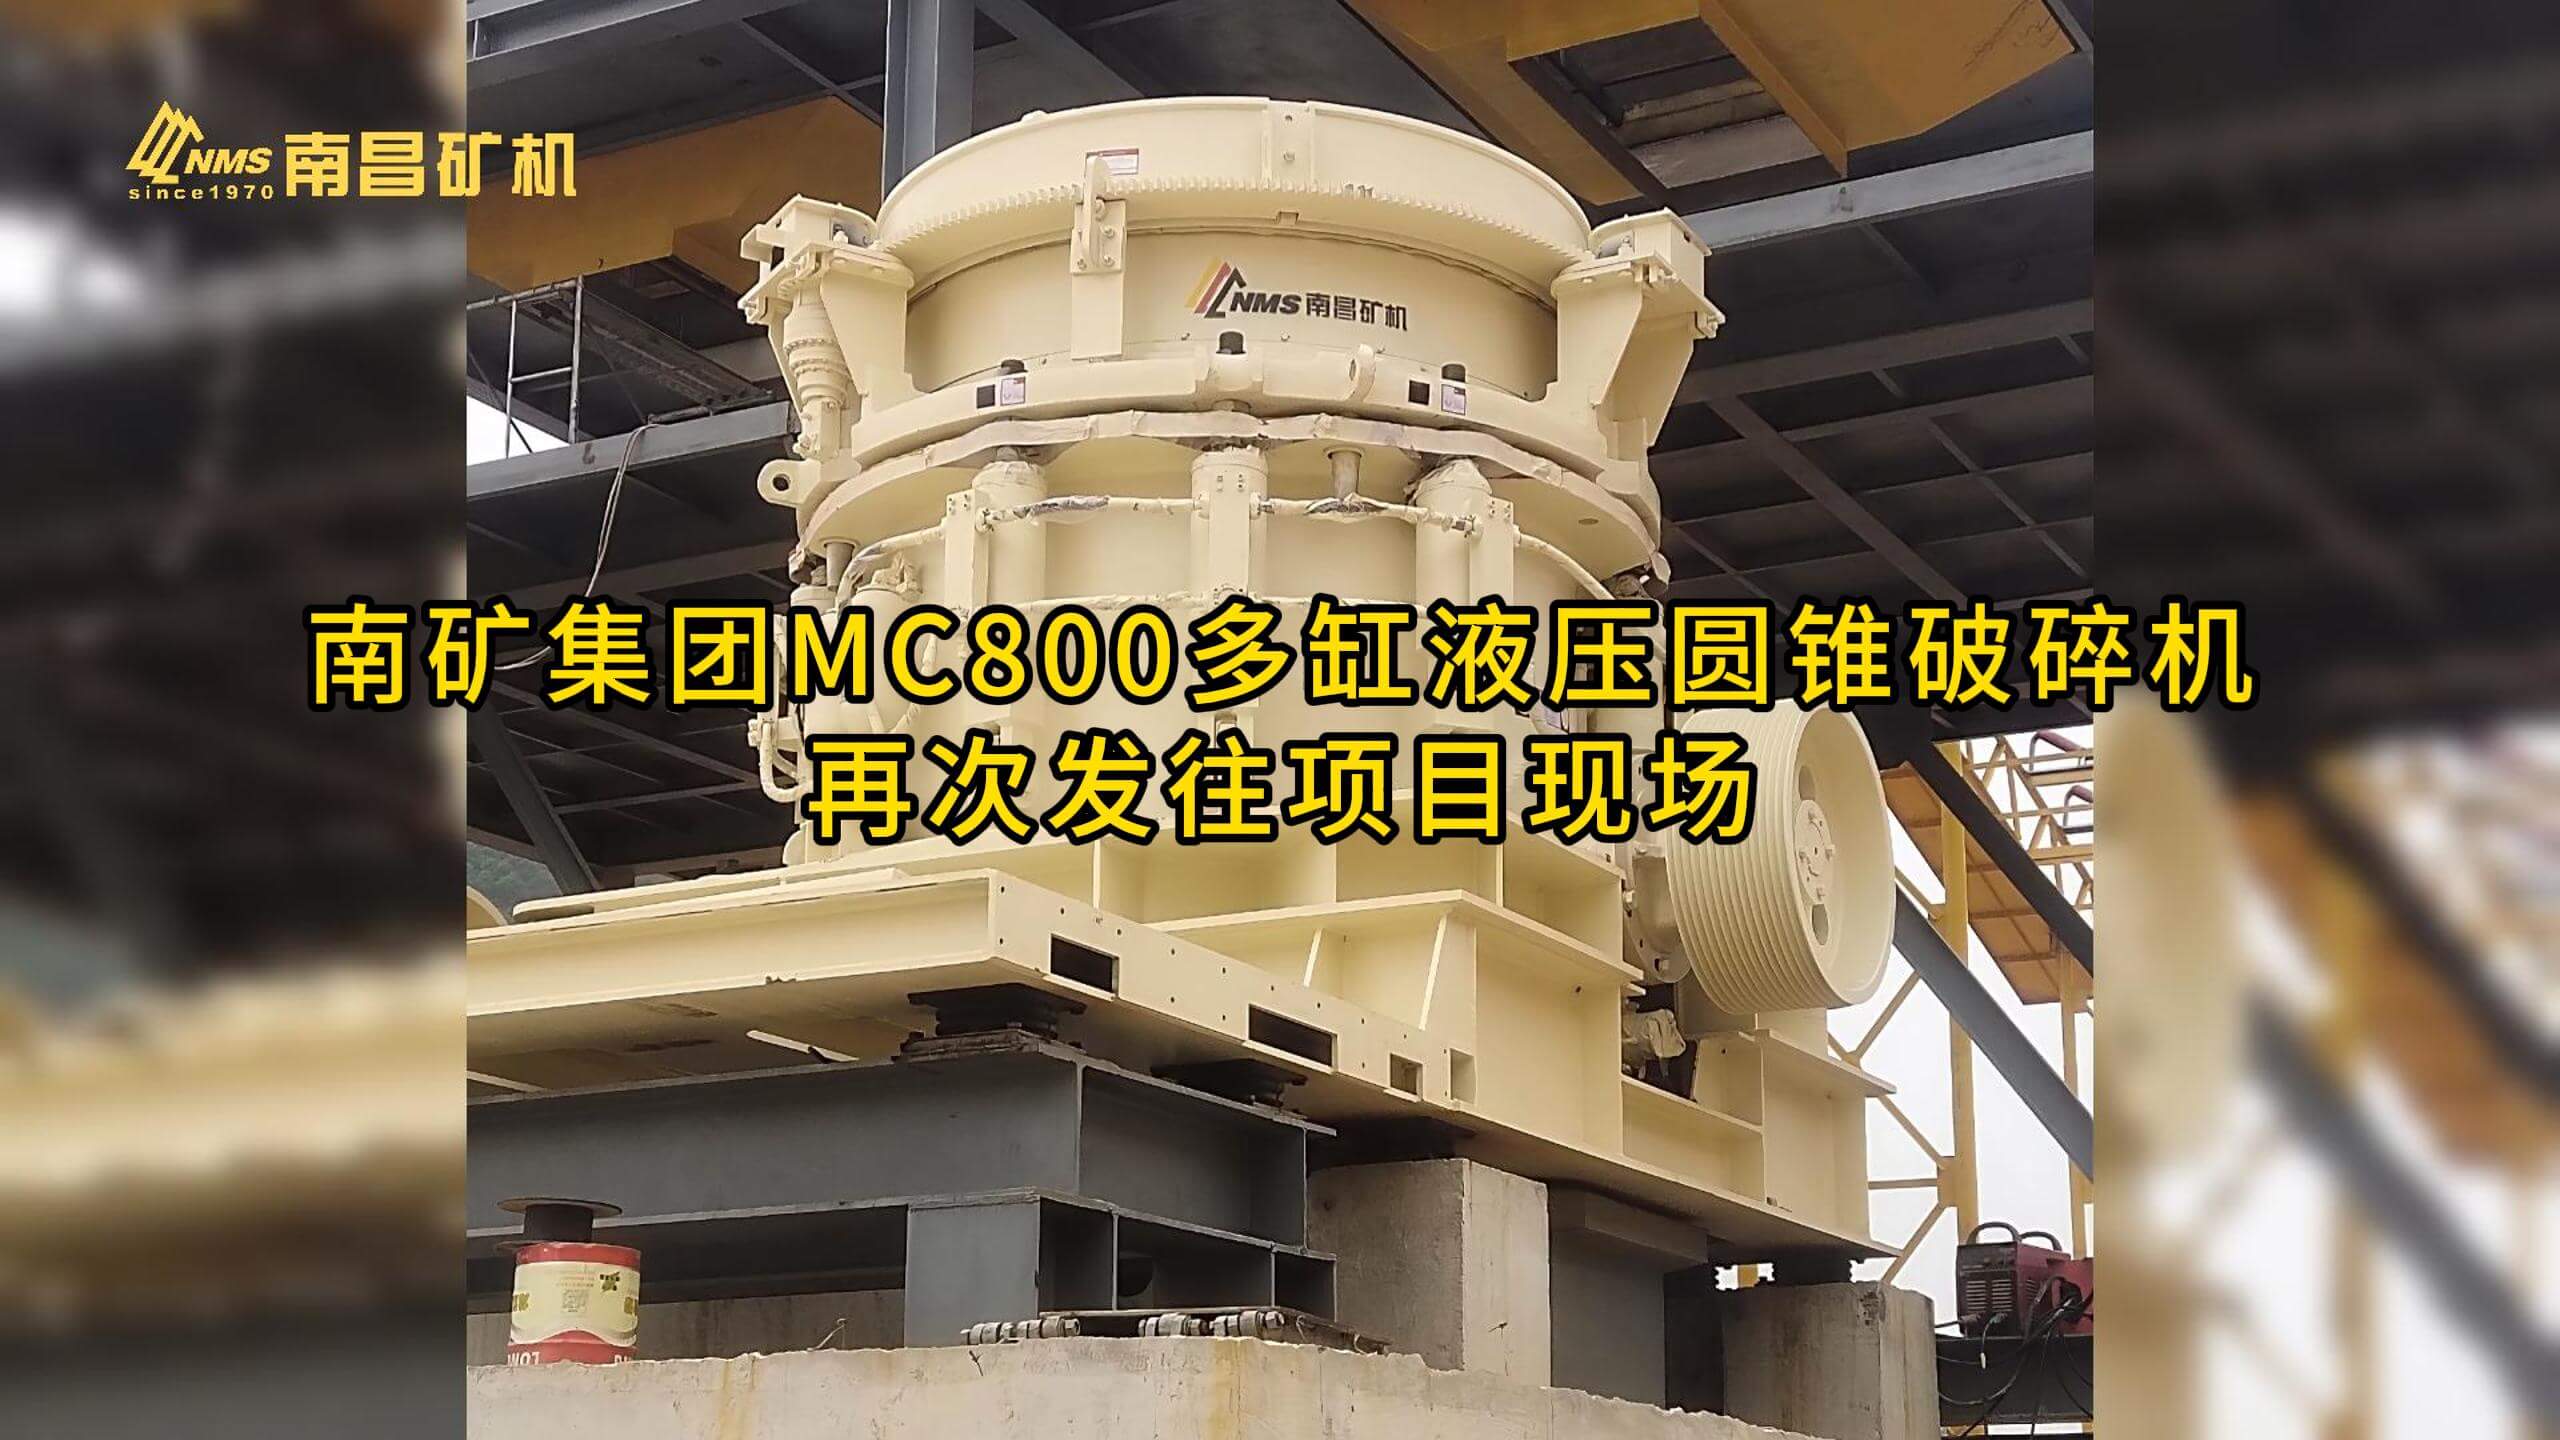 南矿集团MC800多缸液压圆锥破碎机再次发往项目现场